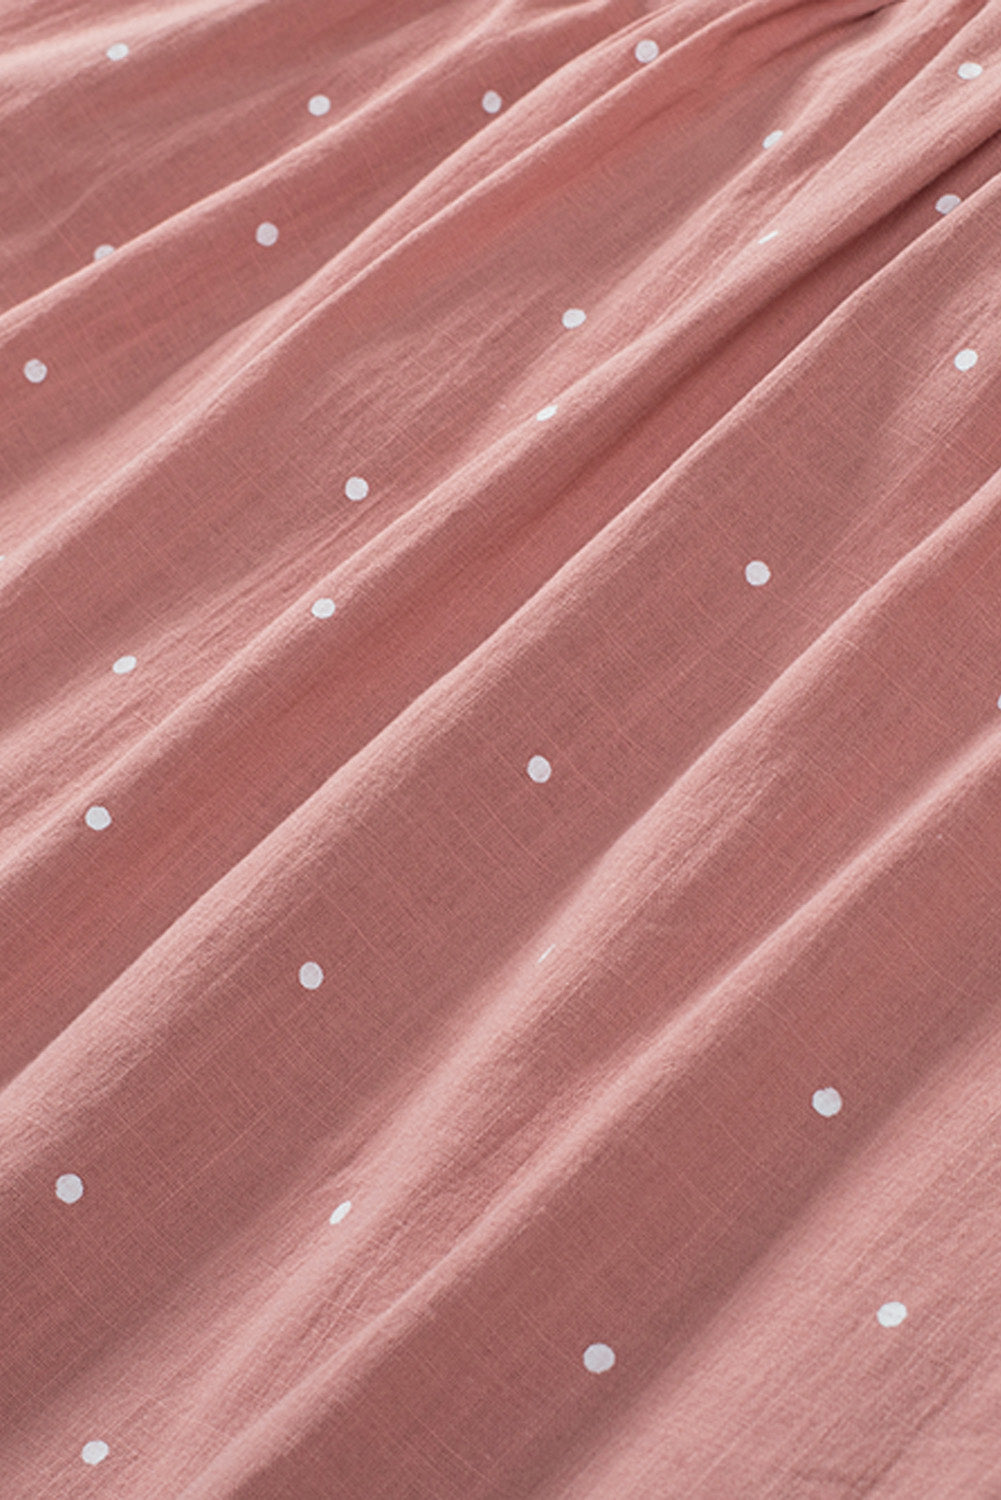 Rosafarbene Bluse mit eckigem Ausschnitt, gepunktetem Print, Puffärmeln und Raffung hinten